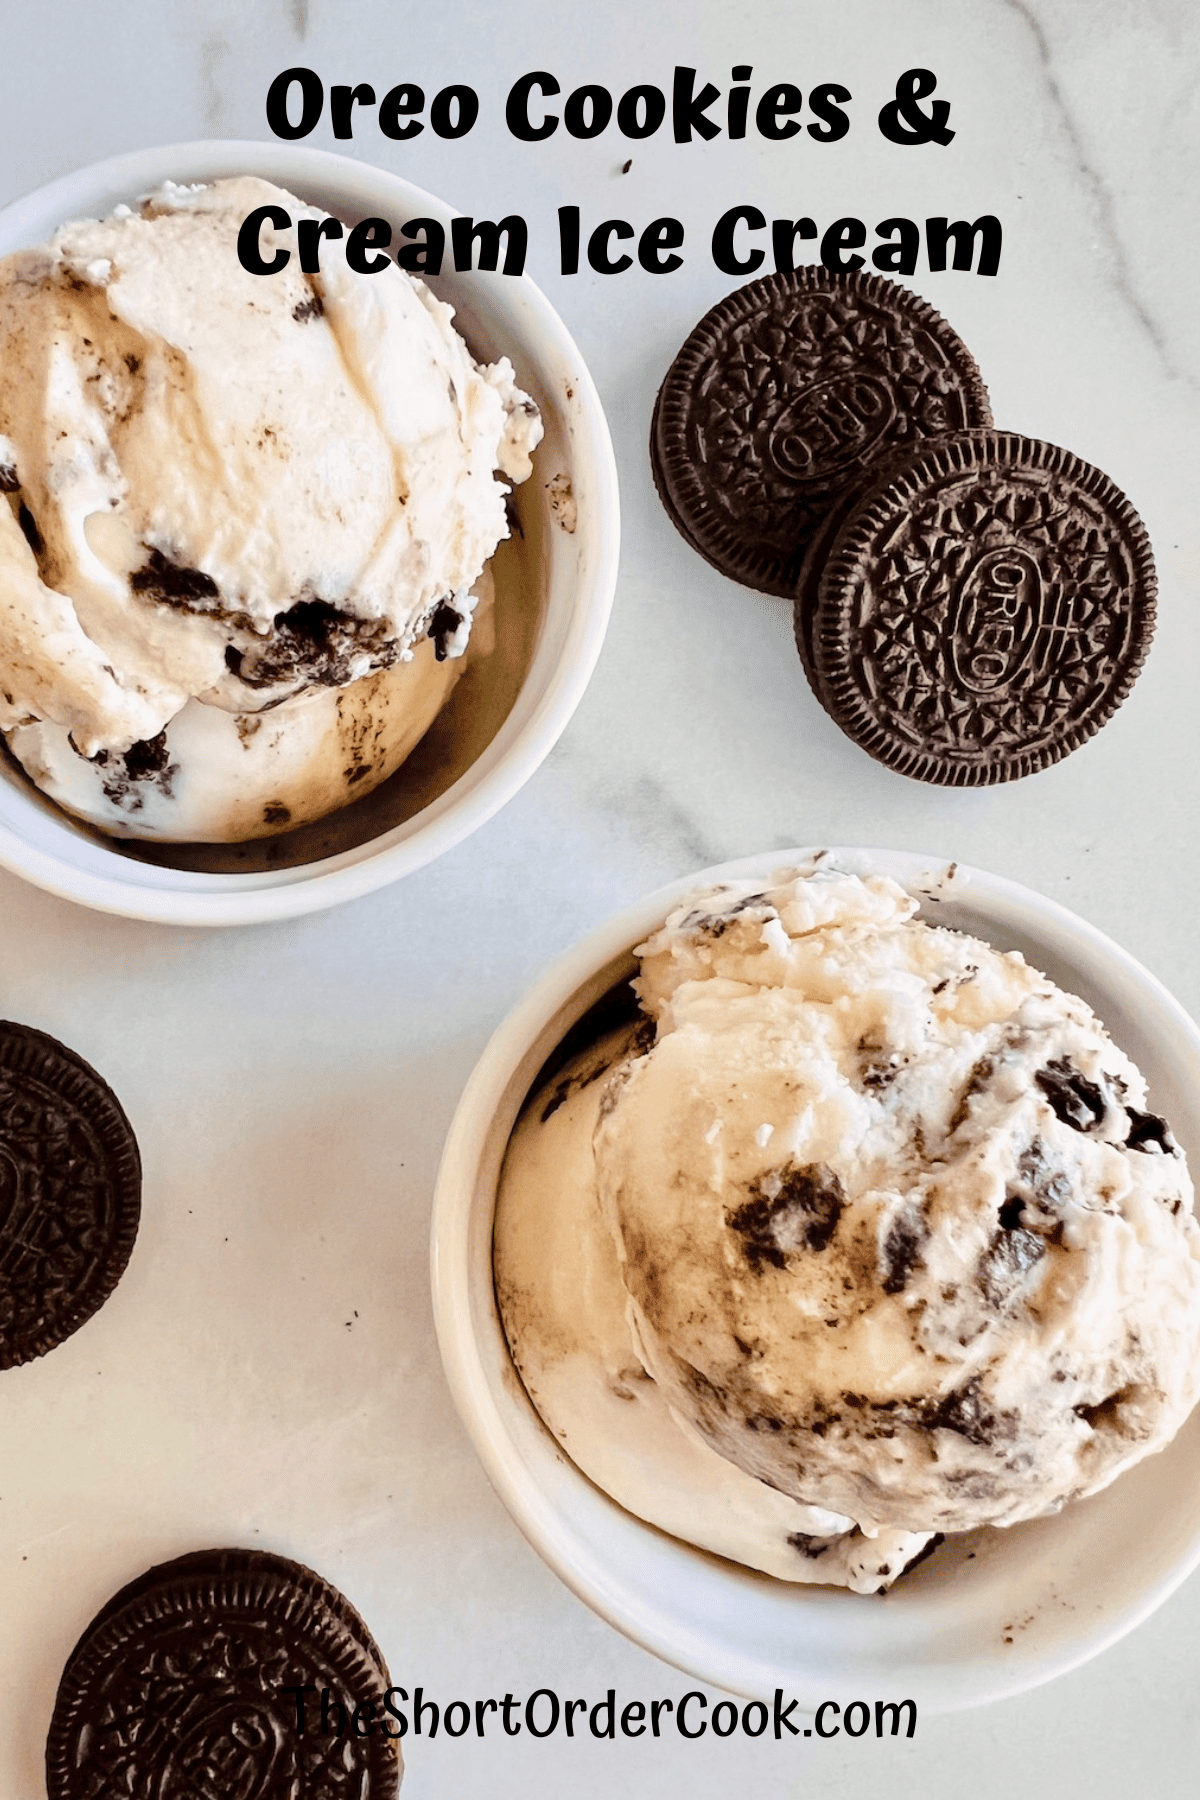 Oreo Cookies & Cream Ice Cream double scooped in bowls.